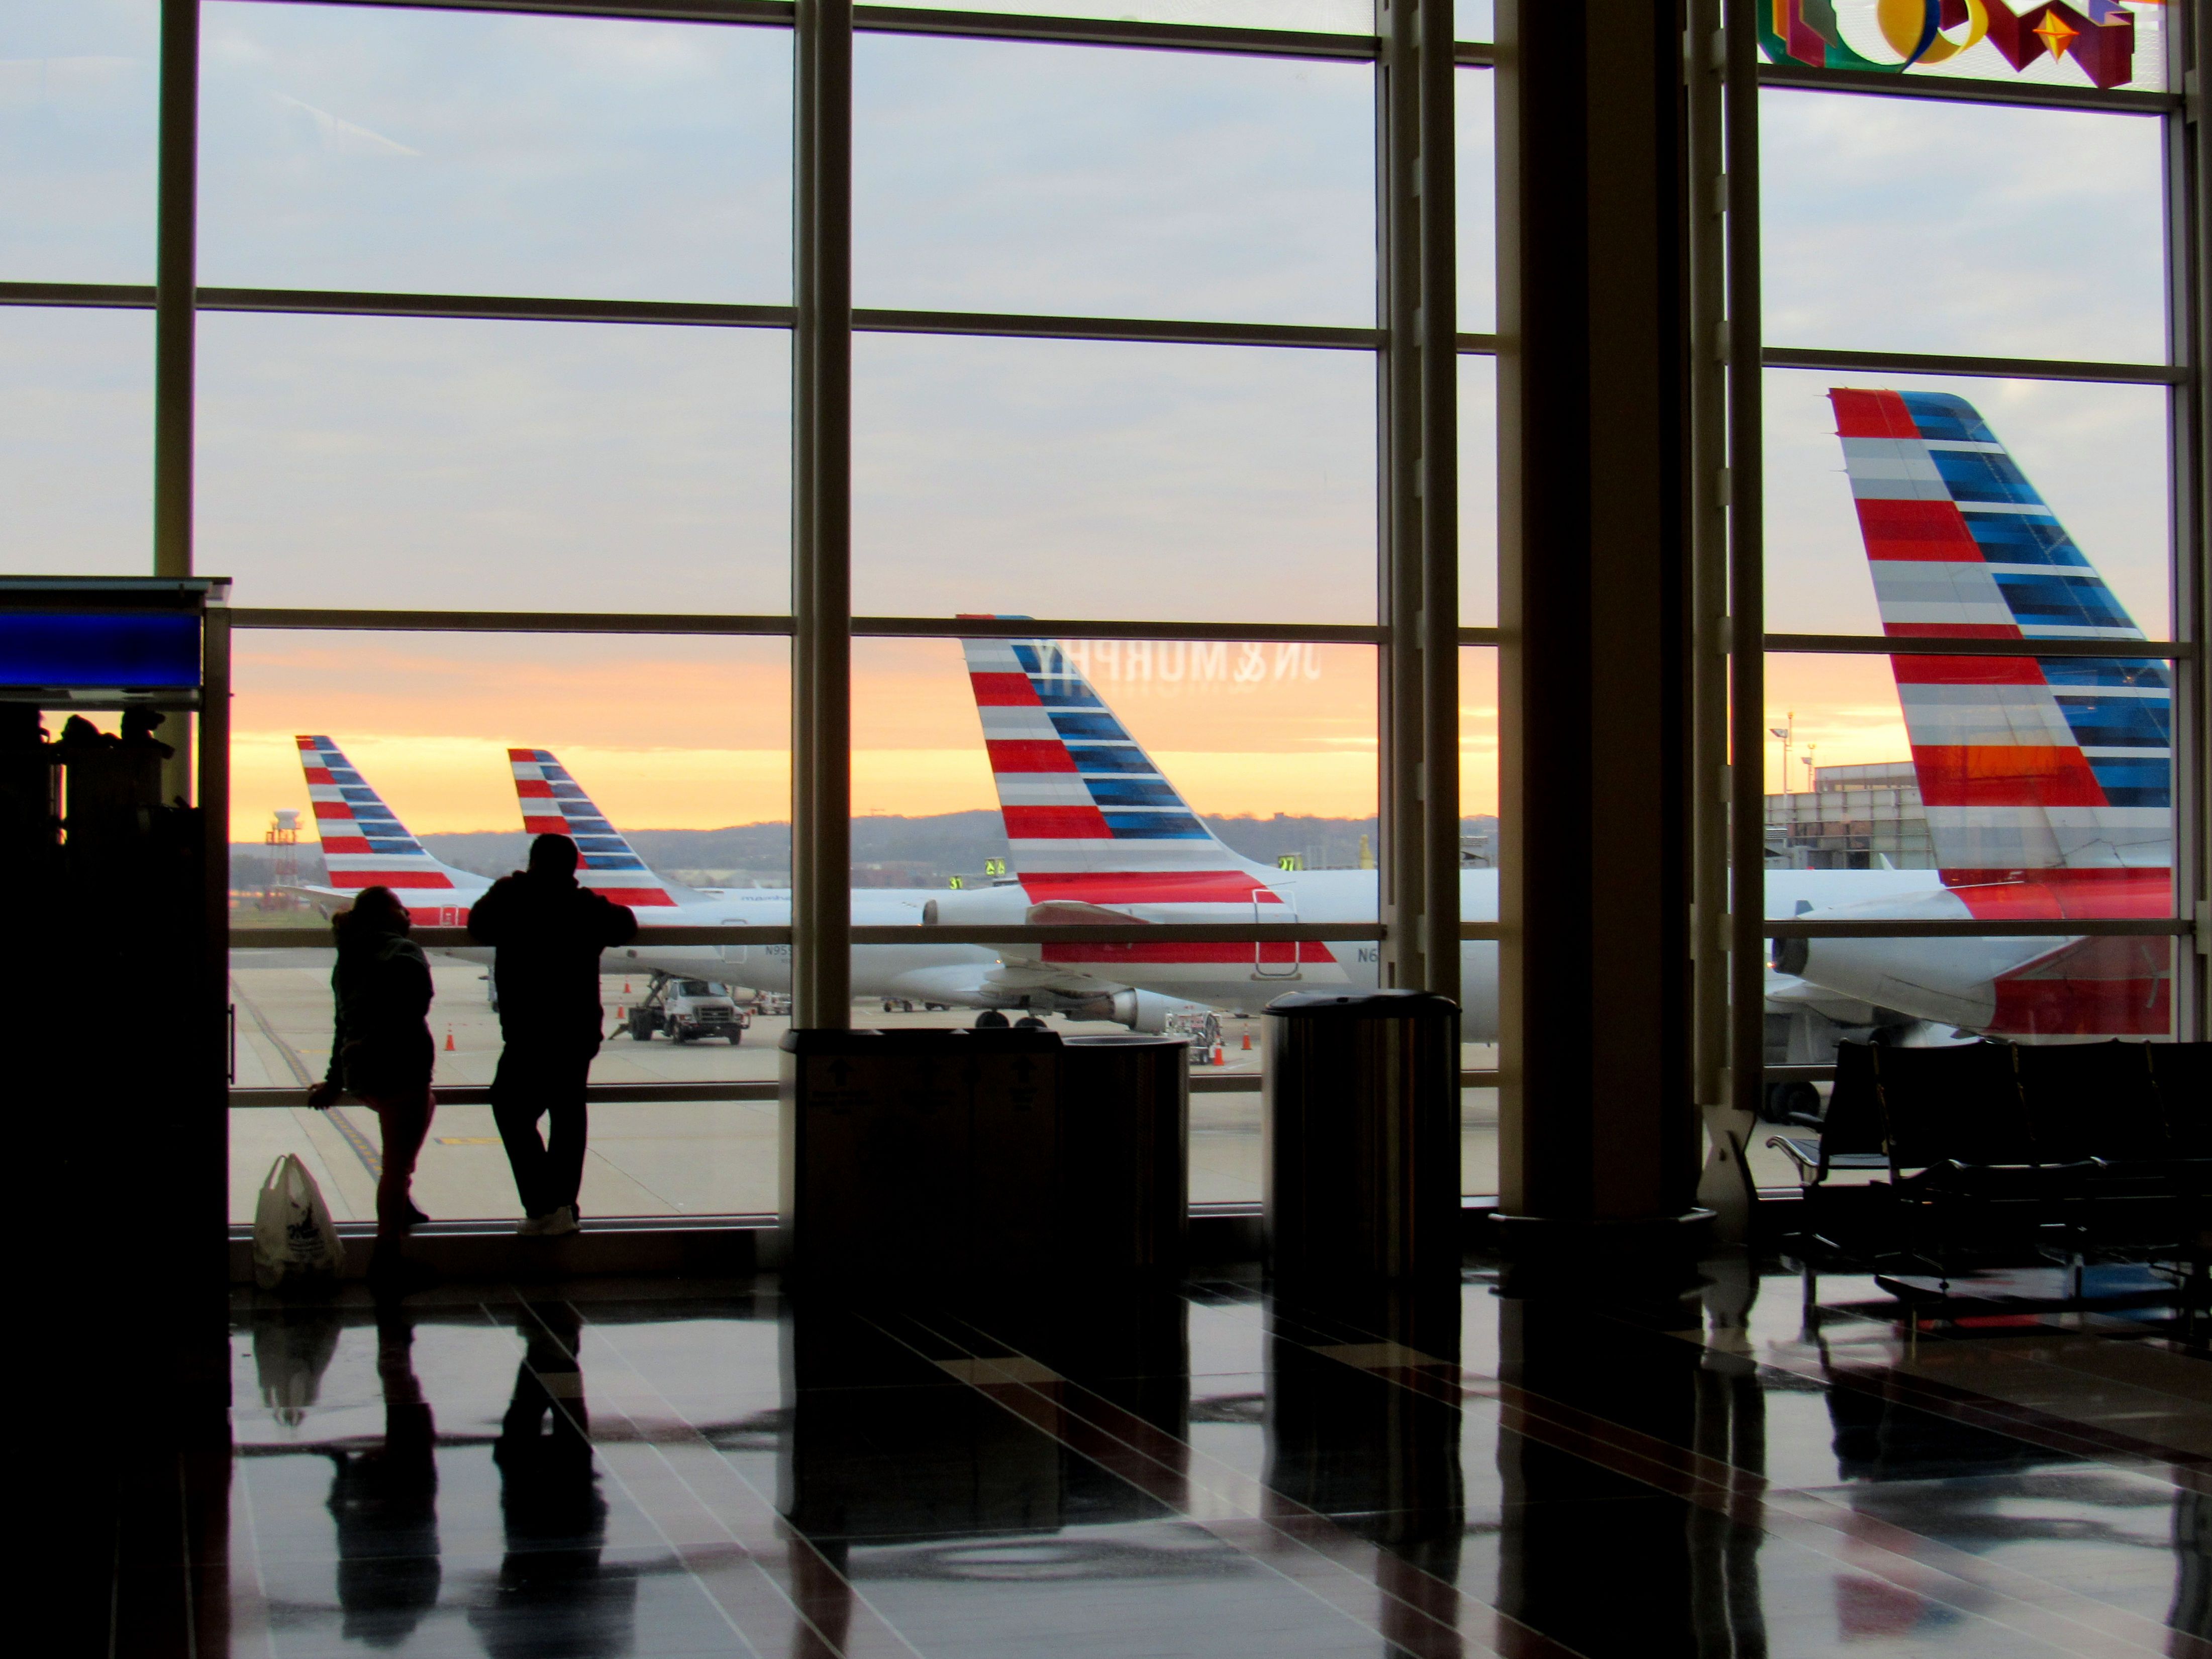 Several American Airlines aircraft parked at Ronald Reagan Washington National Airport (DCA).